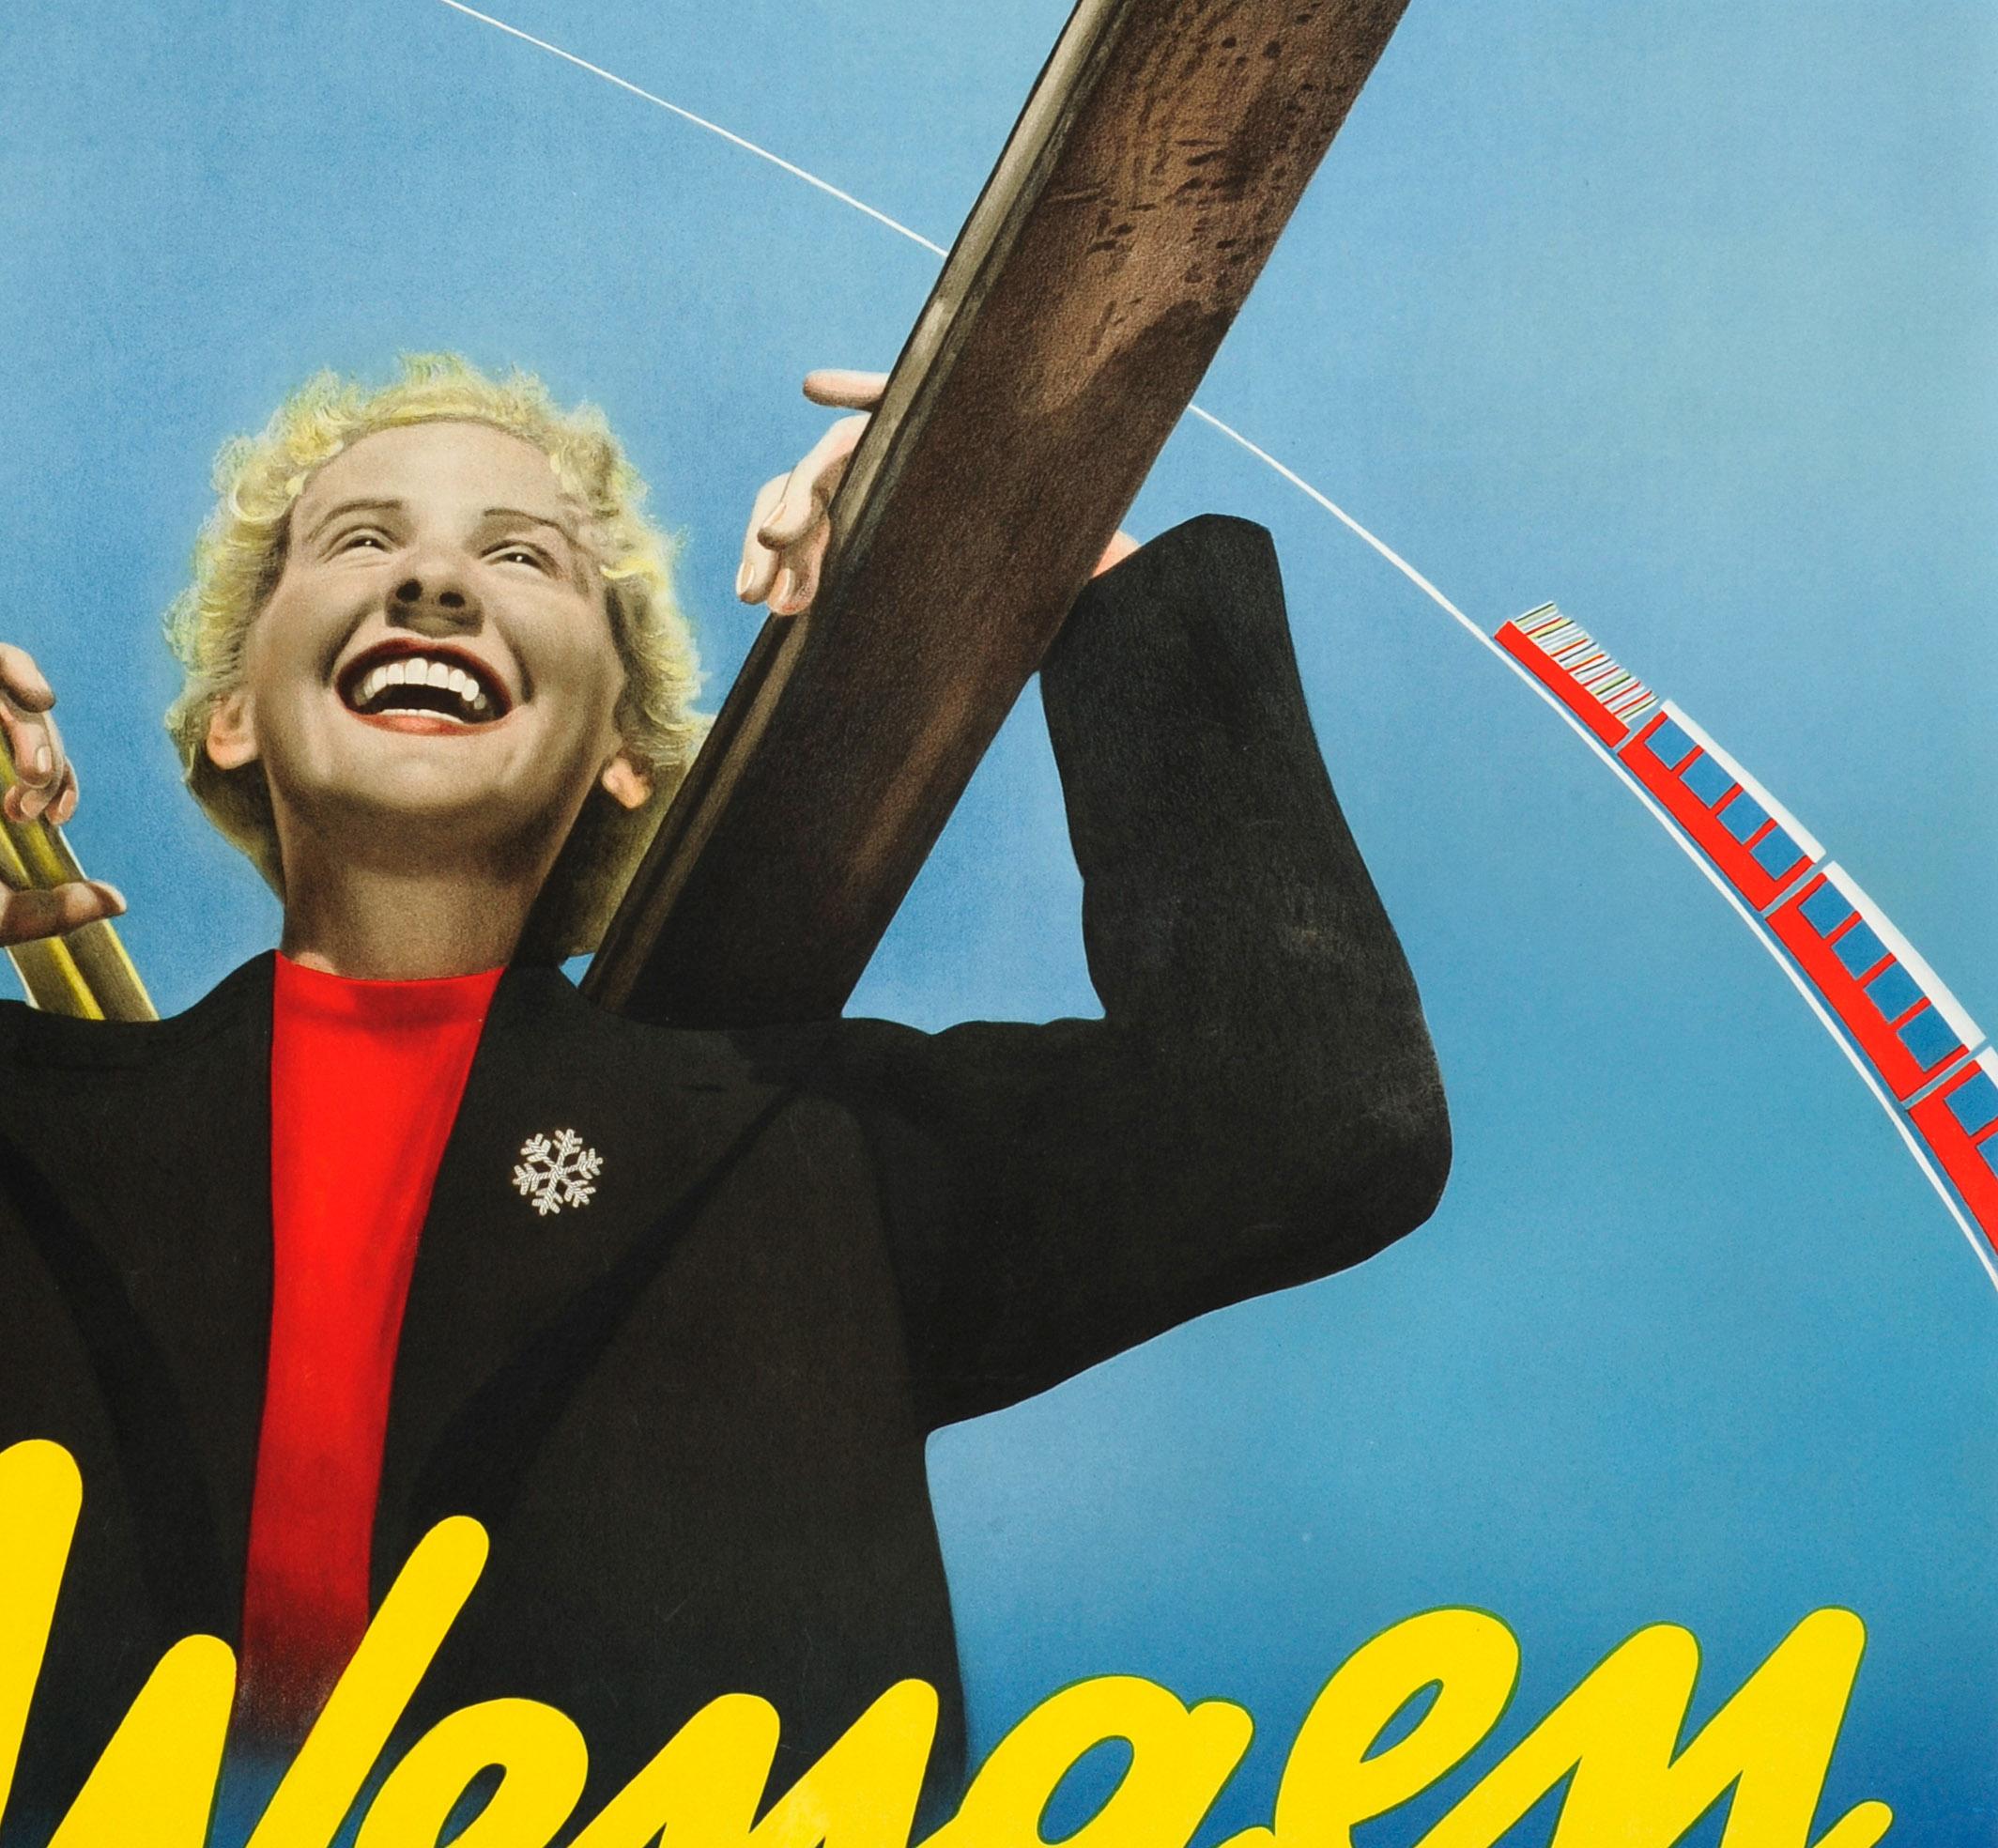 Original Vintage-Skireiseplakat, das für den beliebten alpinen Urlaubsort Wengen in der Schweiz wirbt. Es zeigt ein Foto einer lachenden blonden Dame, die ein rotes Oberteil mit einer Schneeflockenbrosche an ihrer schwarzen Jacke trägt und ihre